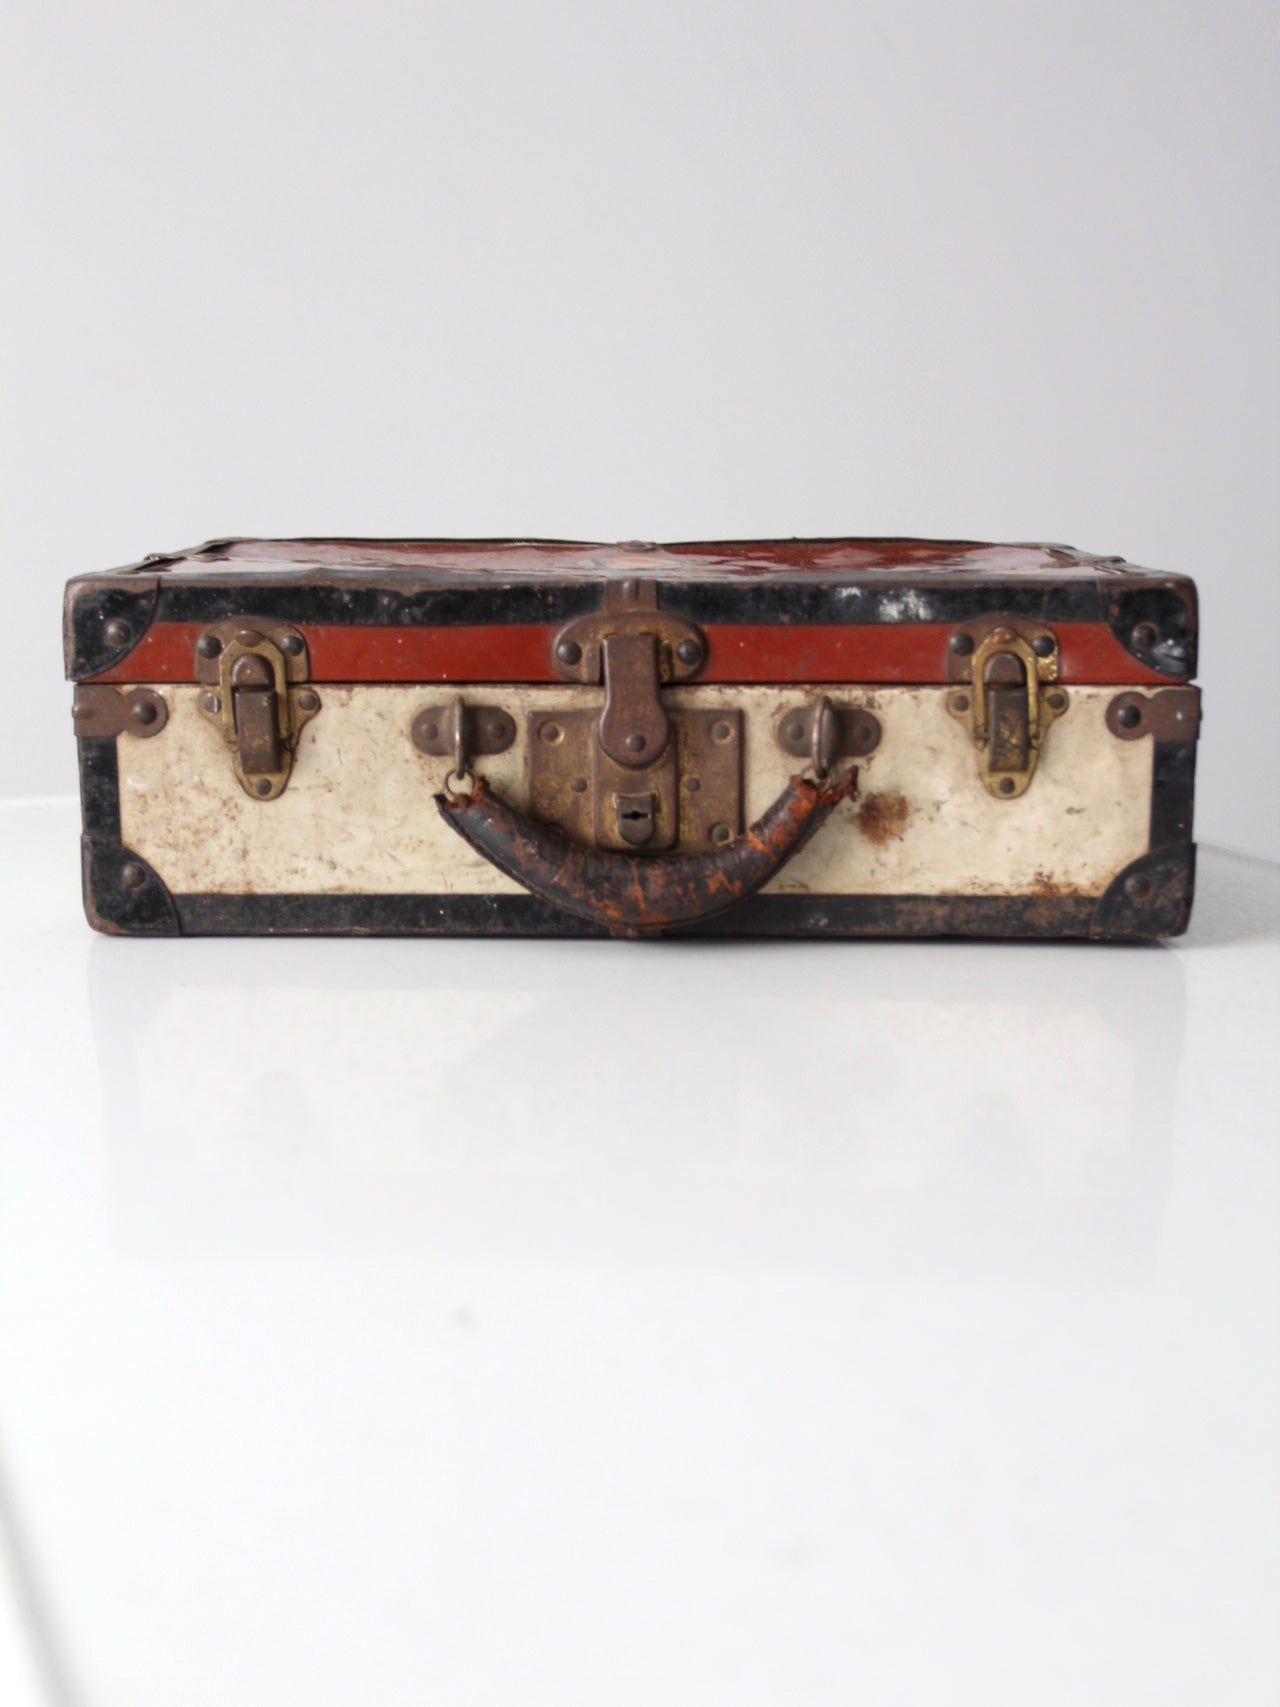 vintage metal luggage case